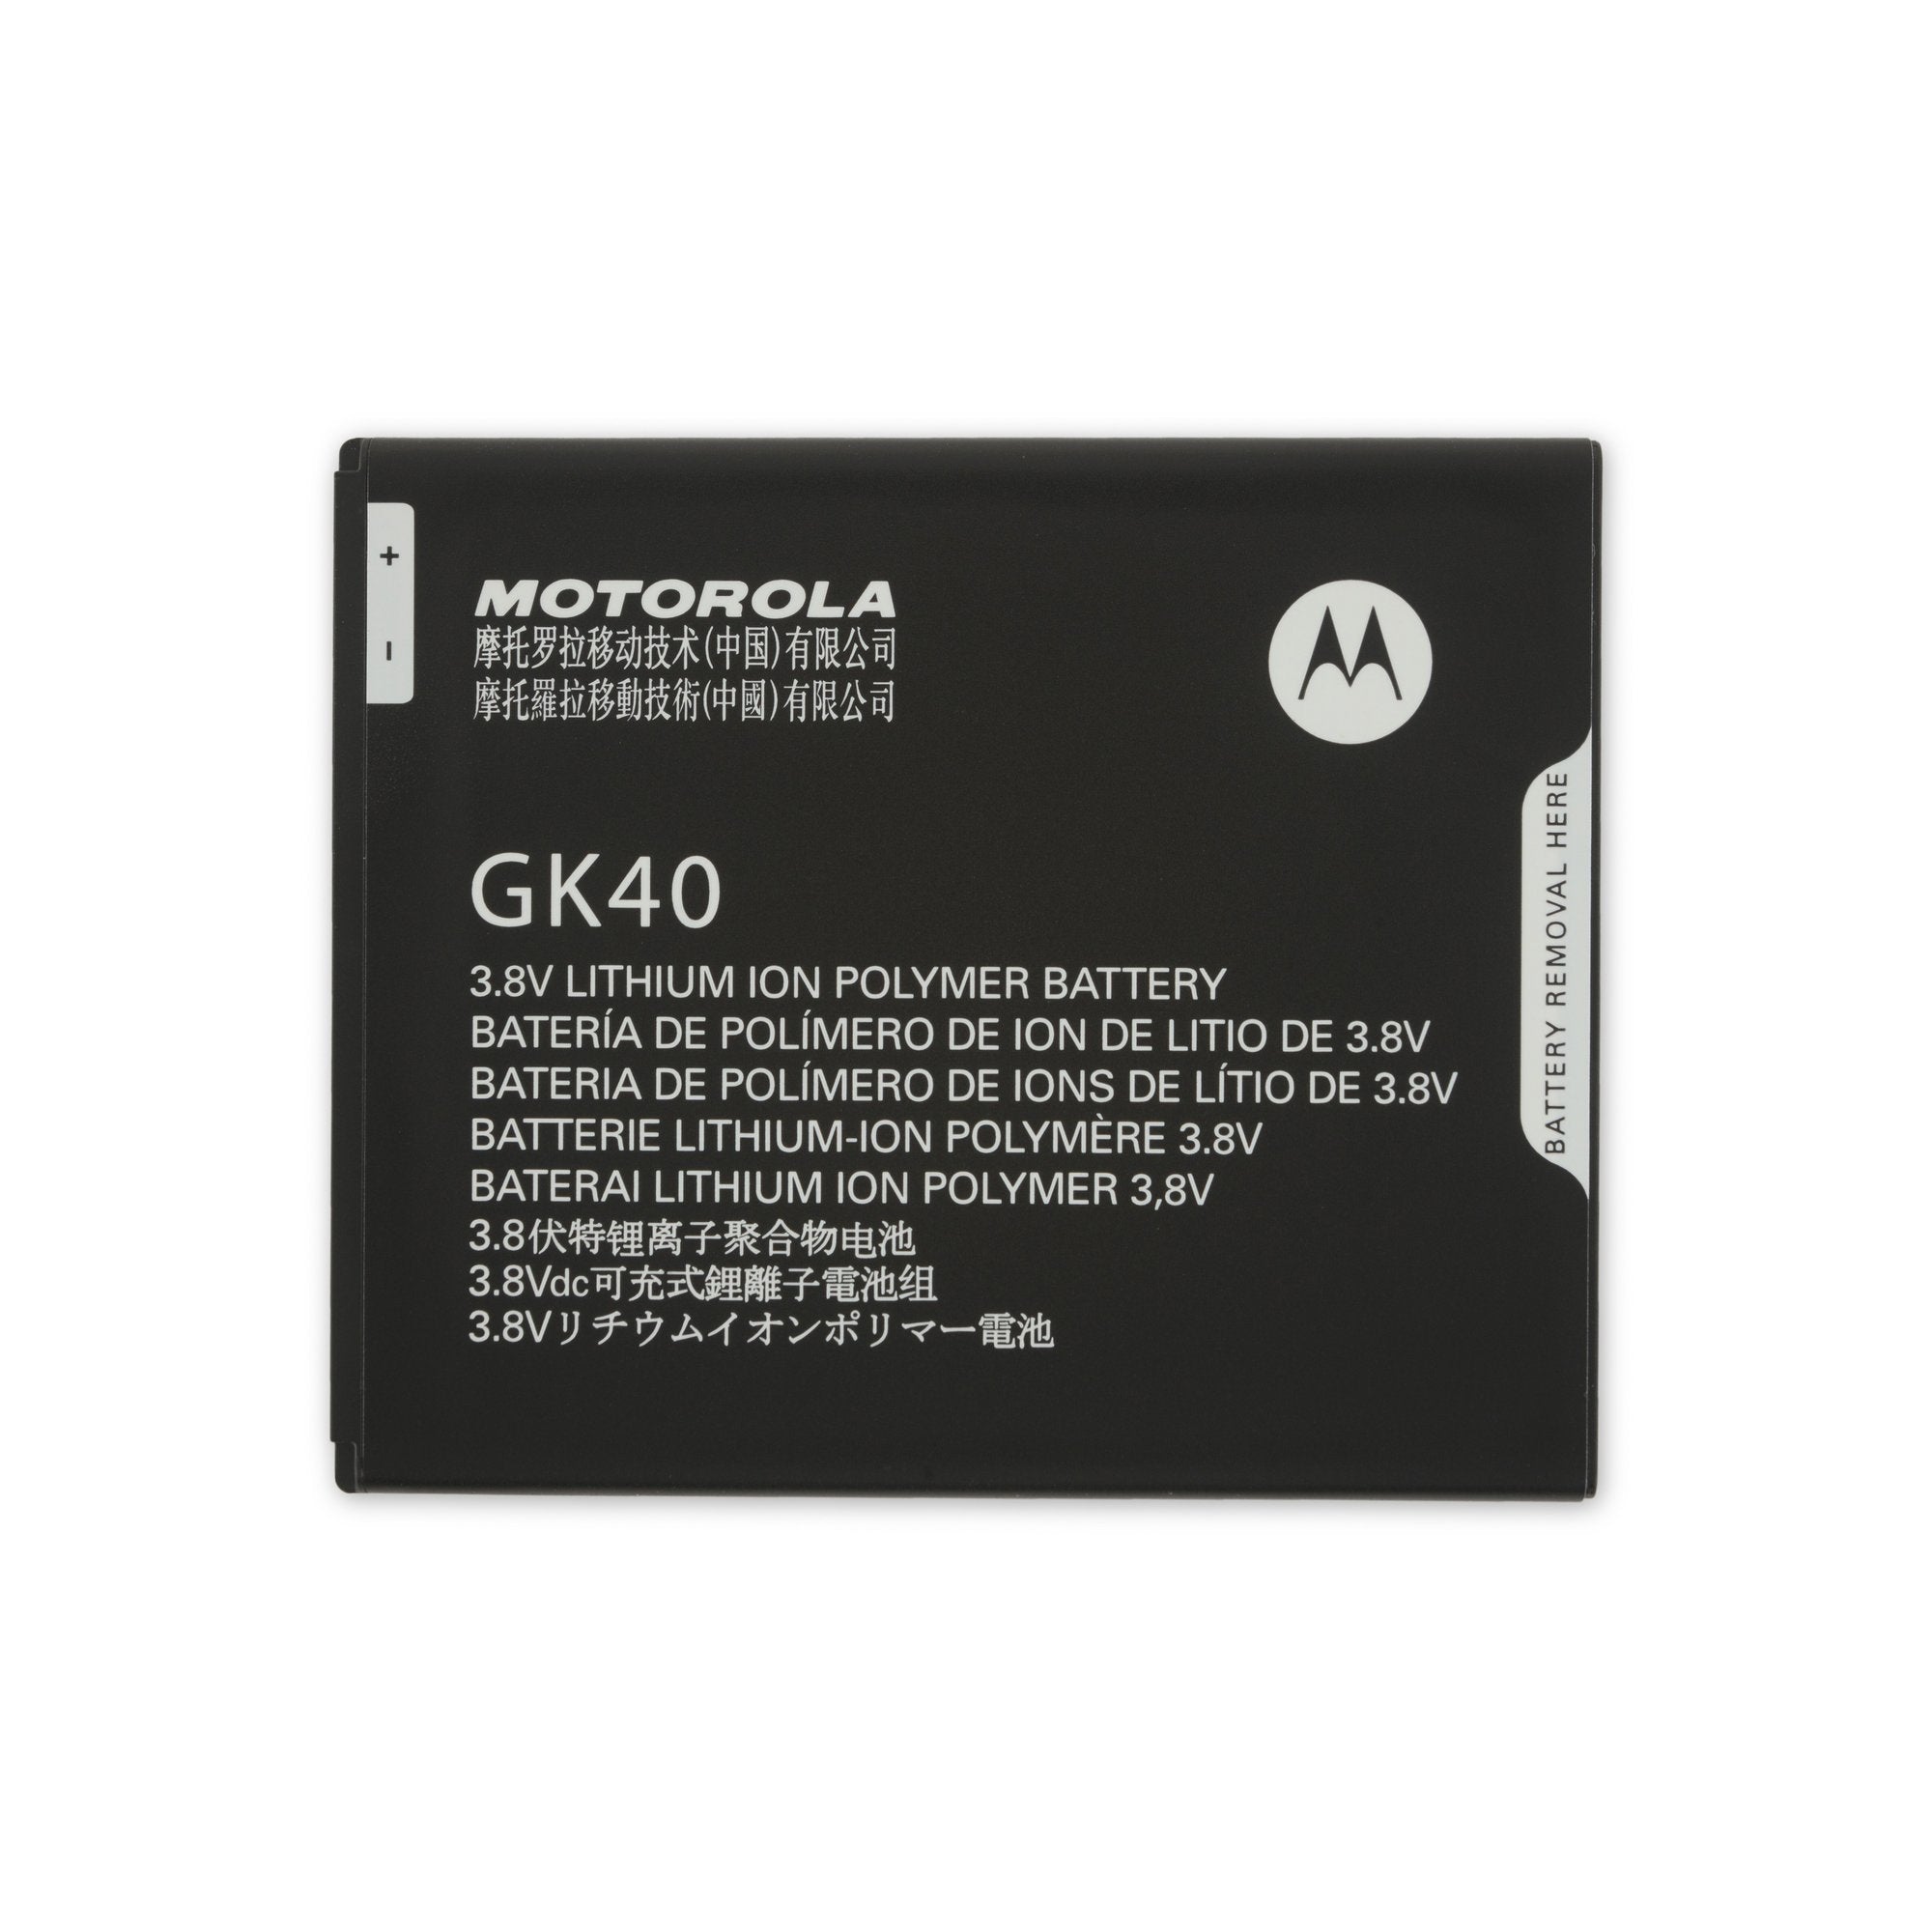 Genuine Motorola GK40 Battery for Motorola Moto G4 Play E3, E4, Moto G5